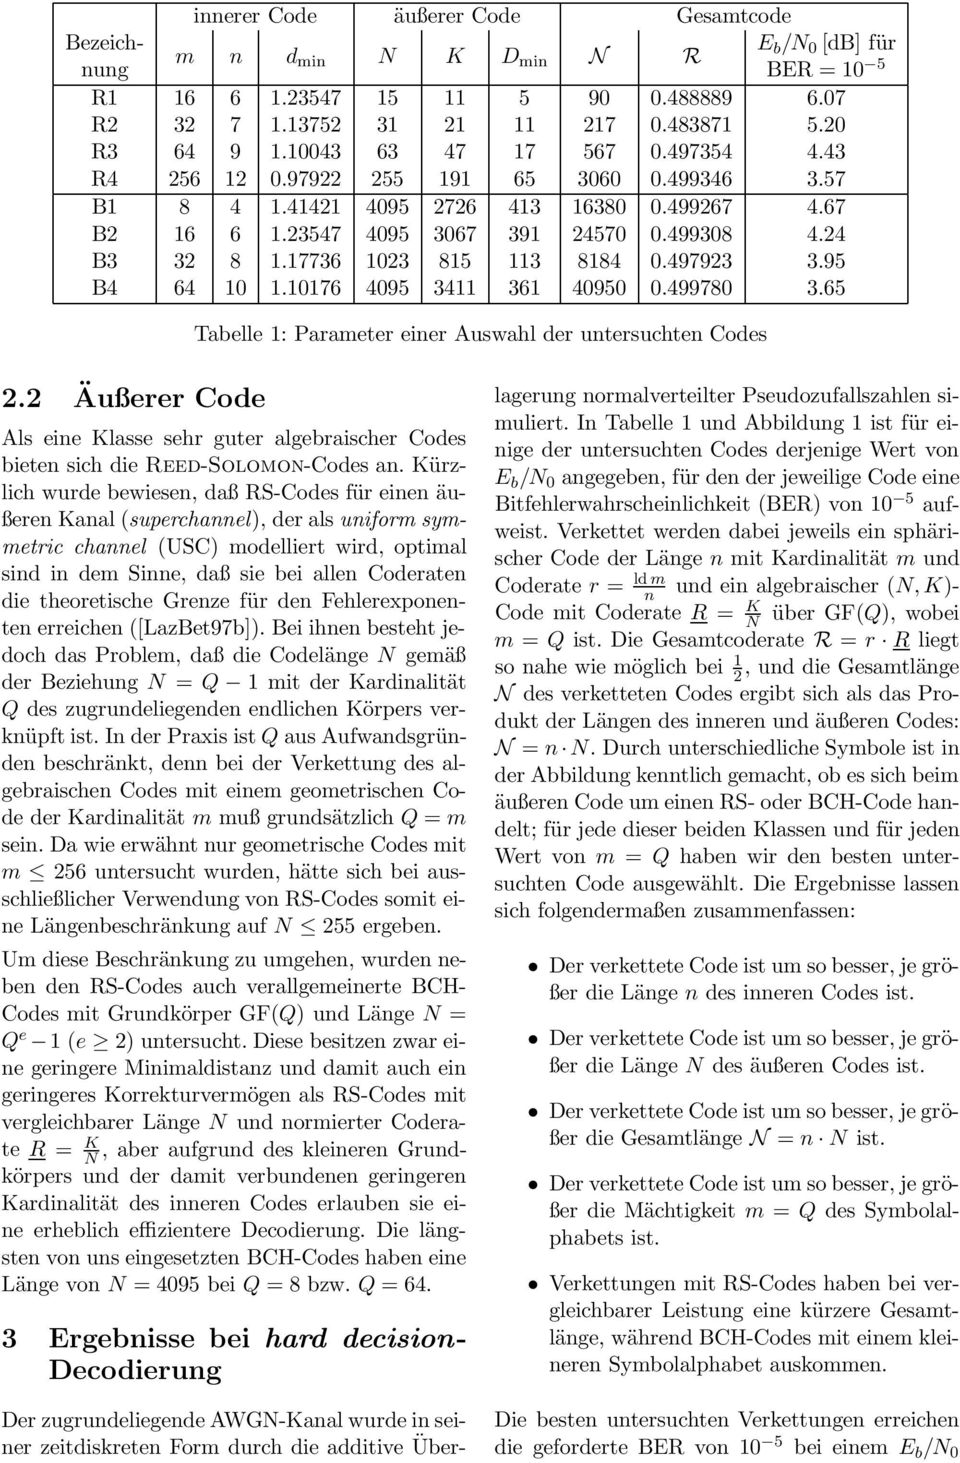 2 Äußerer Code Als eine Klasse sehr guter algebraischer Codes bieten sich die Reed-Solomon-Codes an.